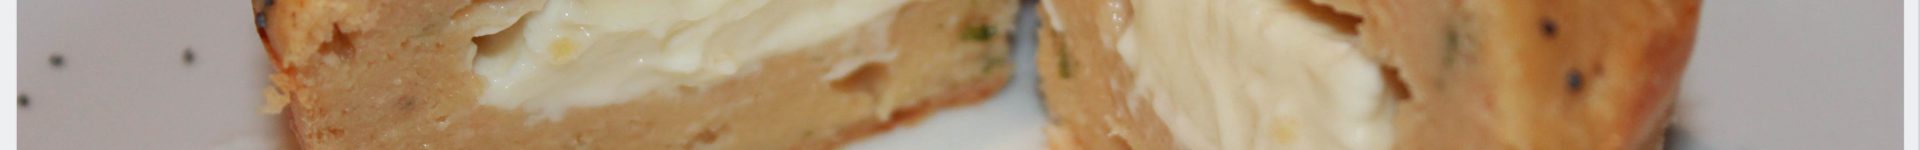 muffins au saumon et au fromage